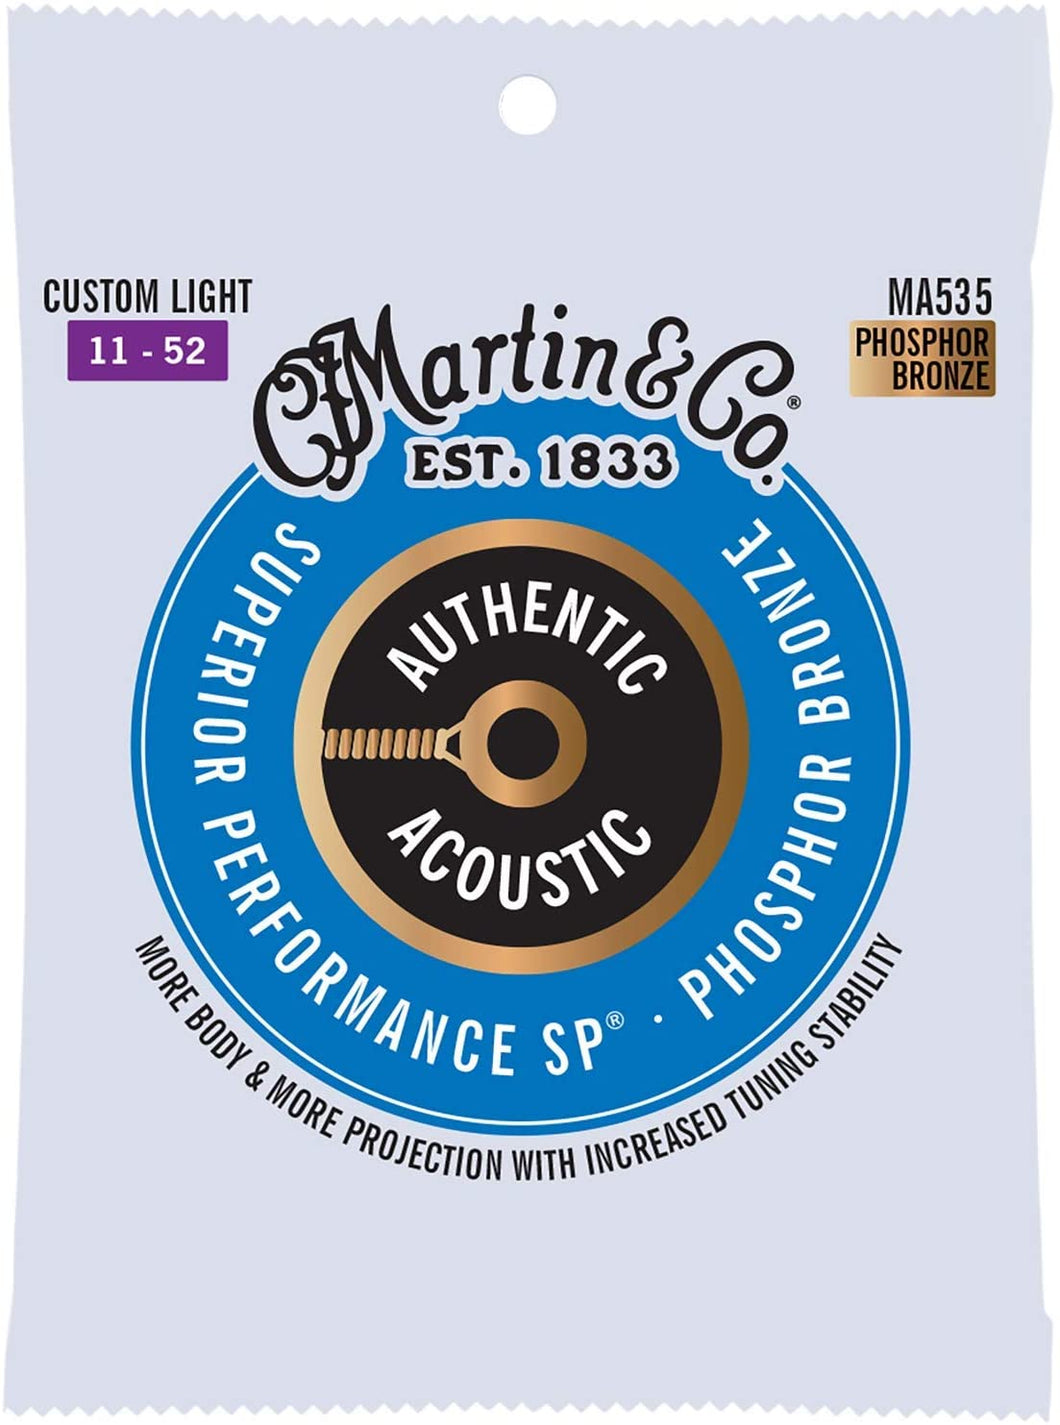 MARTIN MA535 CUSTOM LIGHT 11 - 52 BRONZE PHOSPHORE AUTHENTIC ACOUSTIC PERFORMANCE SUPÉRIEURE SP® CORDES DE GUITARE